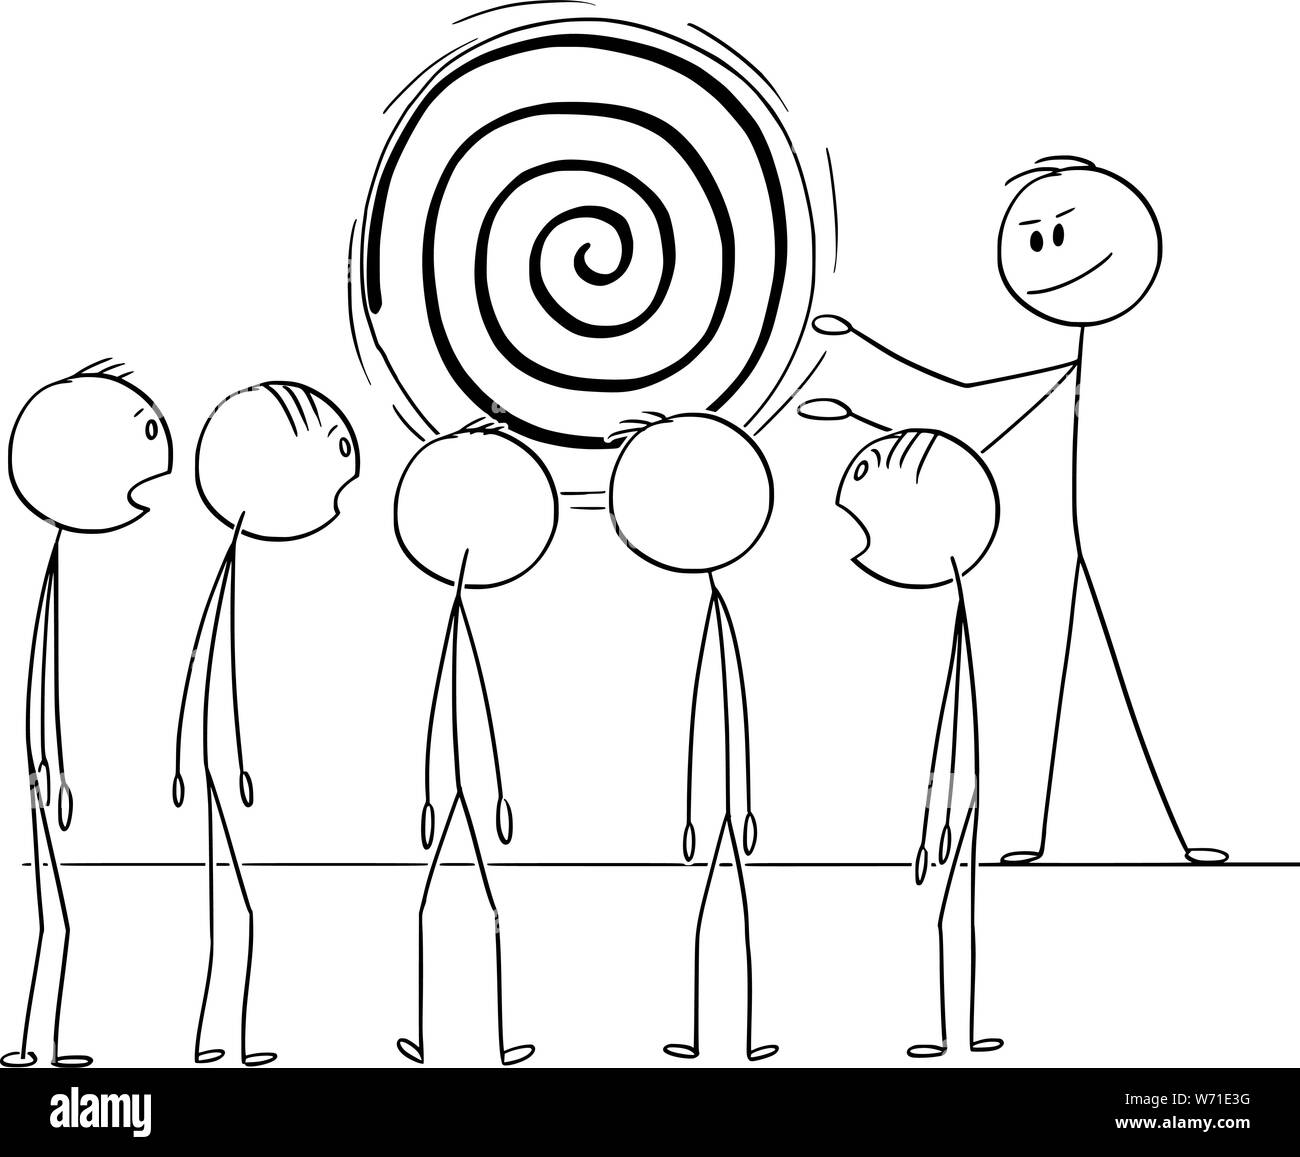 Vector cartoon stick figura disegno illustrazione concettuale dell'uomo, manager o business leader hypnotize team o di un gruppo di lavoratori con spirale di ipnosi. Illustrazione Vettoriale